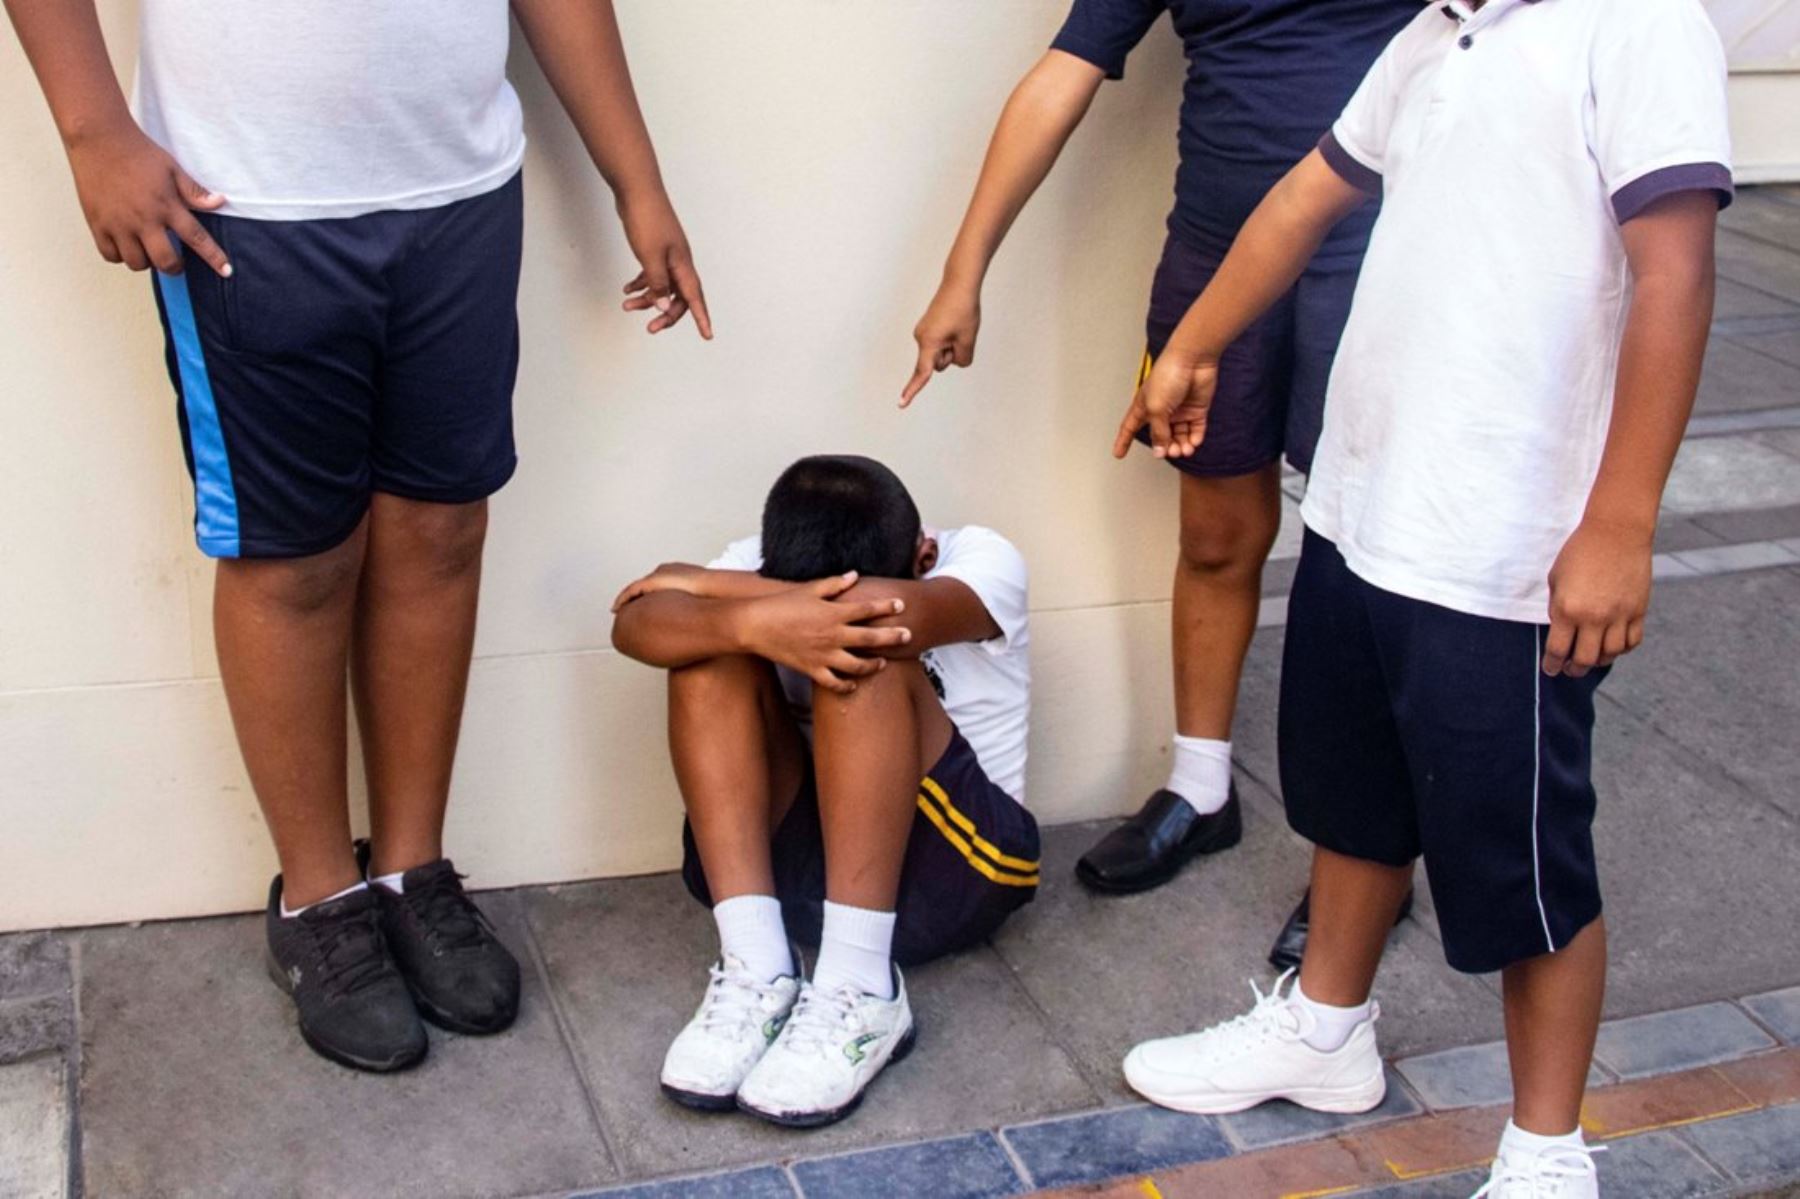 Gobierno toma acción contra la violencia escolar: Ministerio de Justicia anuncia plan de intervención